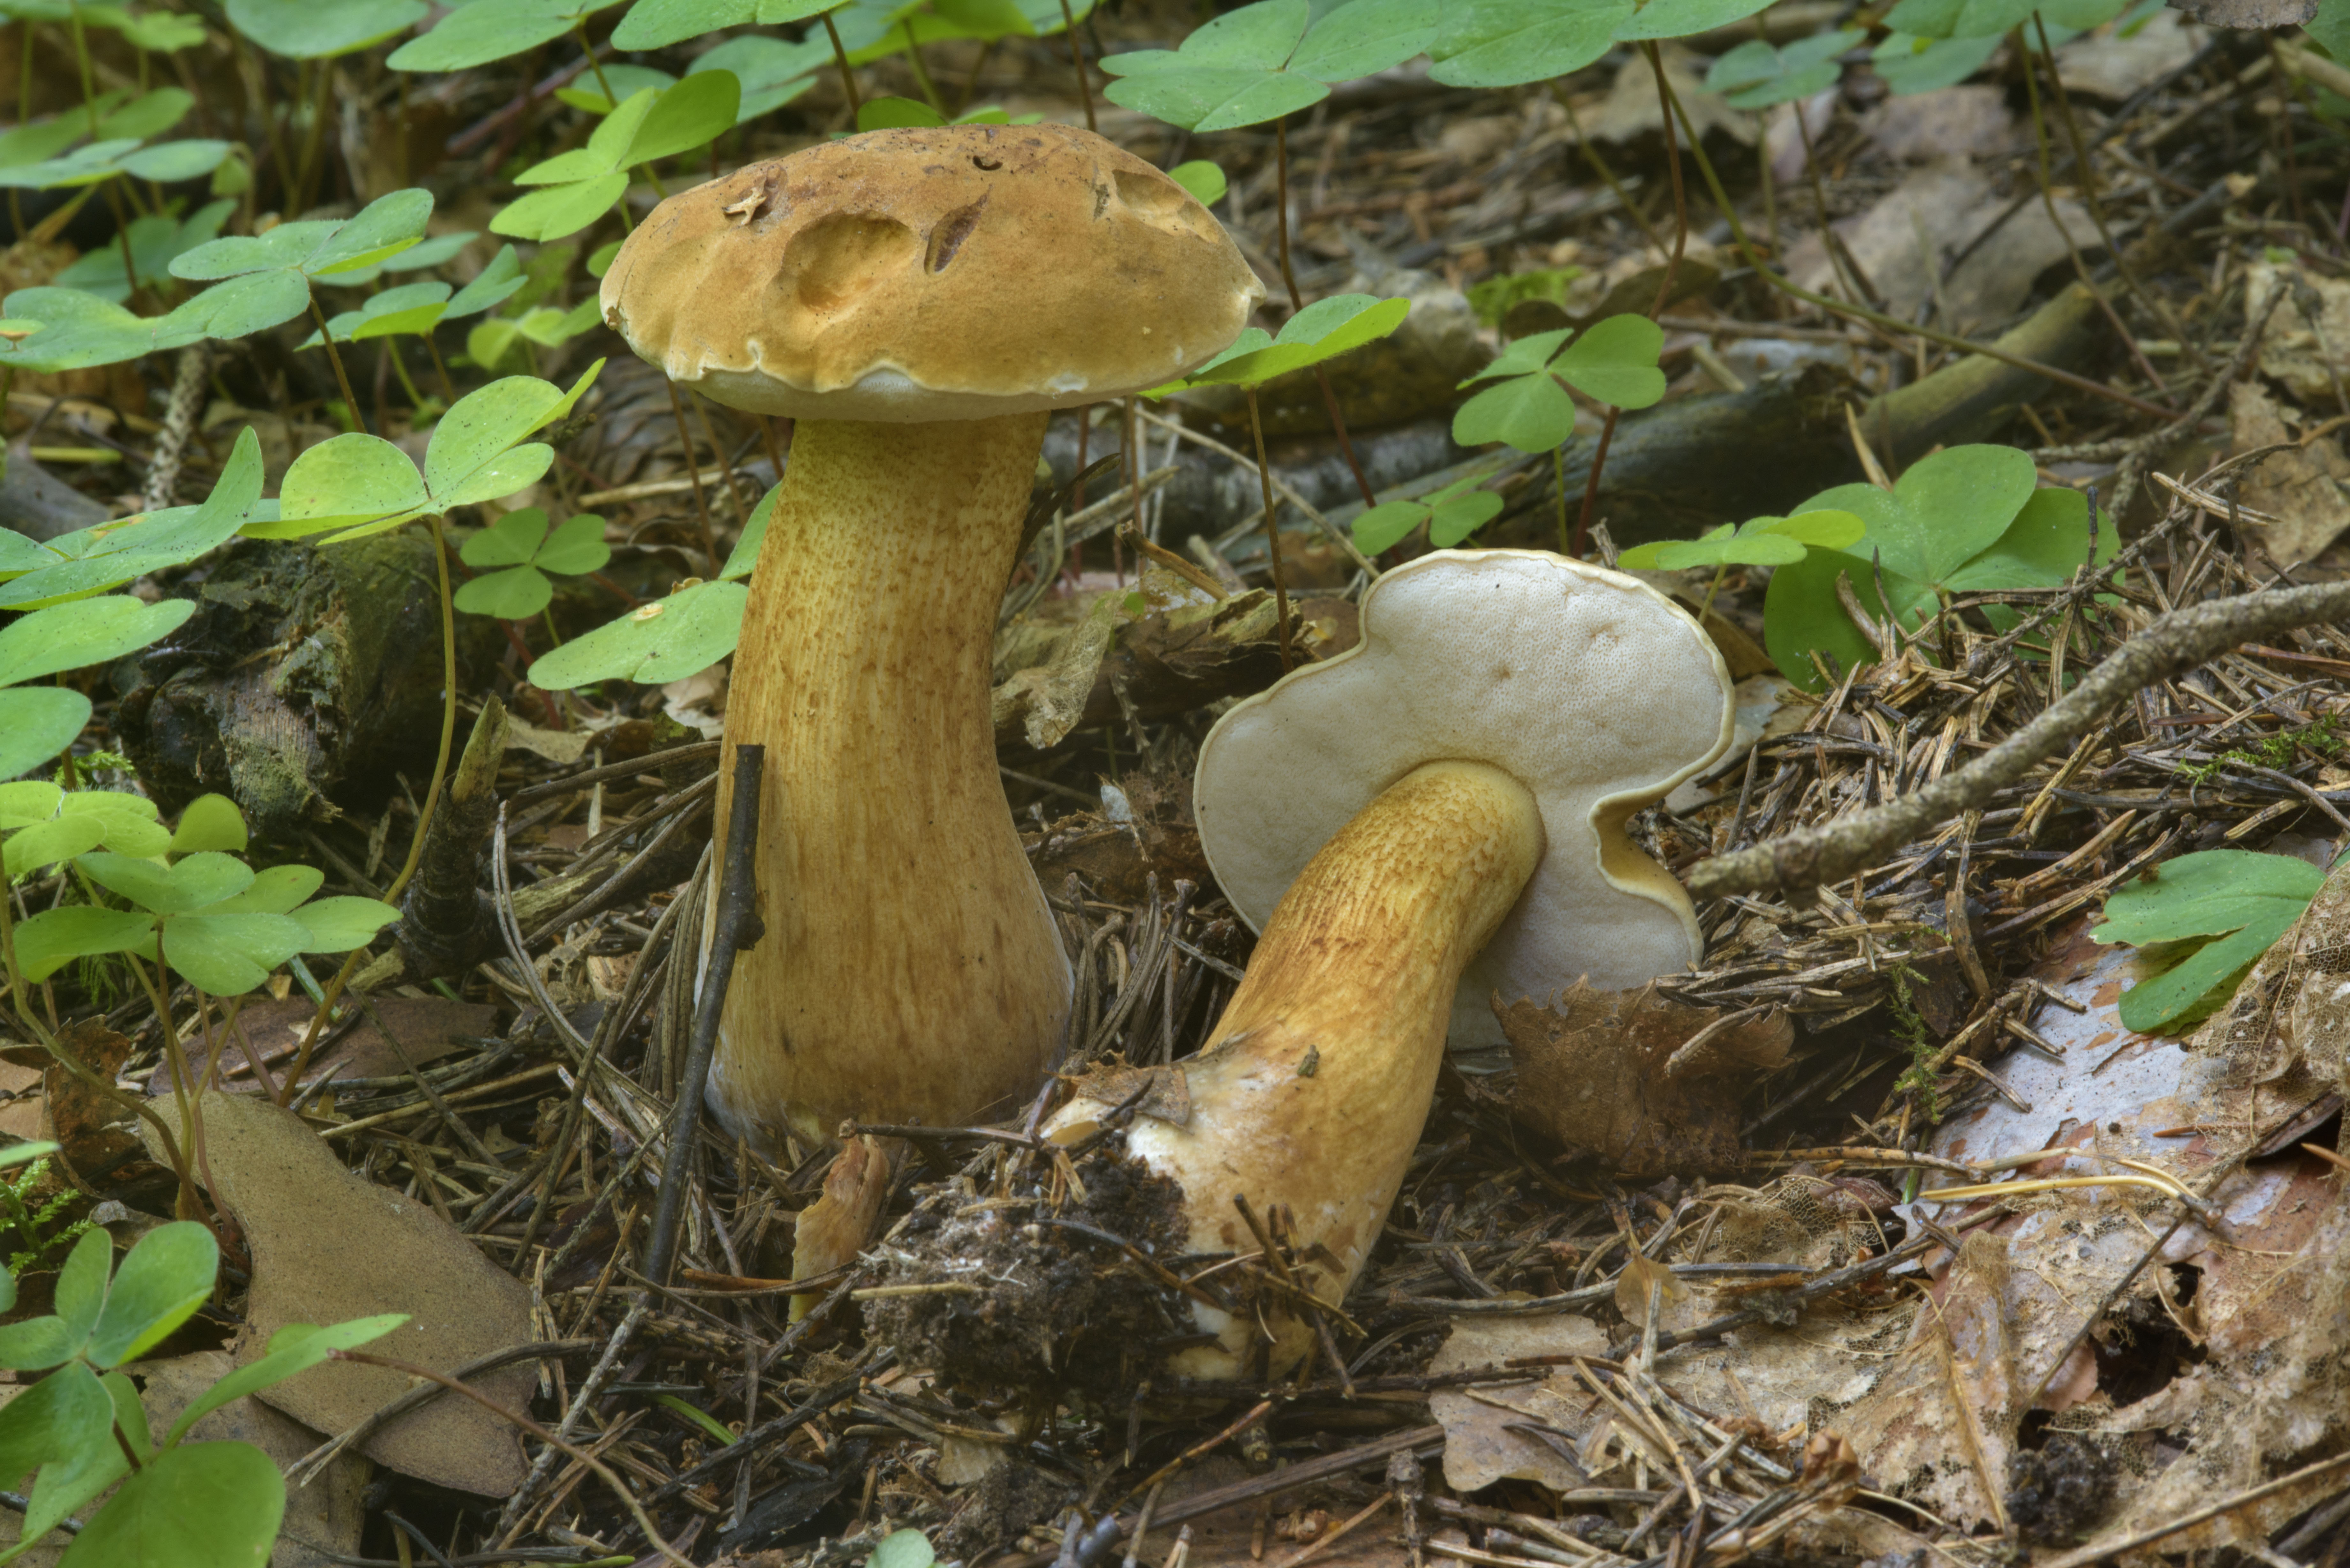 Полубелый гриб (hemileccinum impolitum) или желтый боровик: отличный для маринада